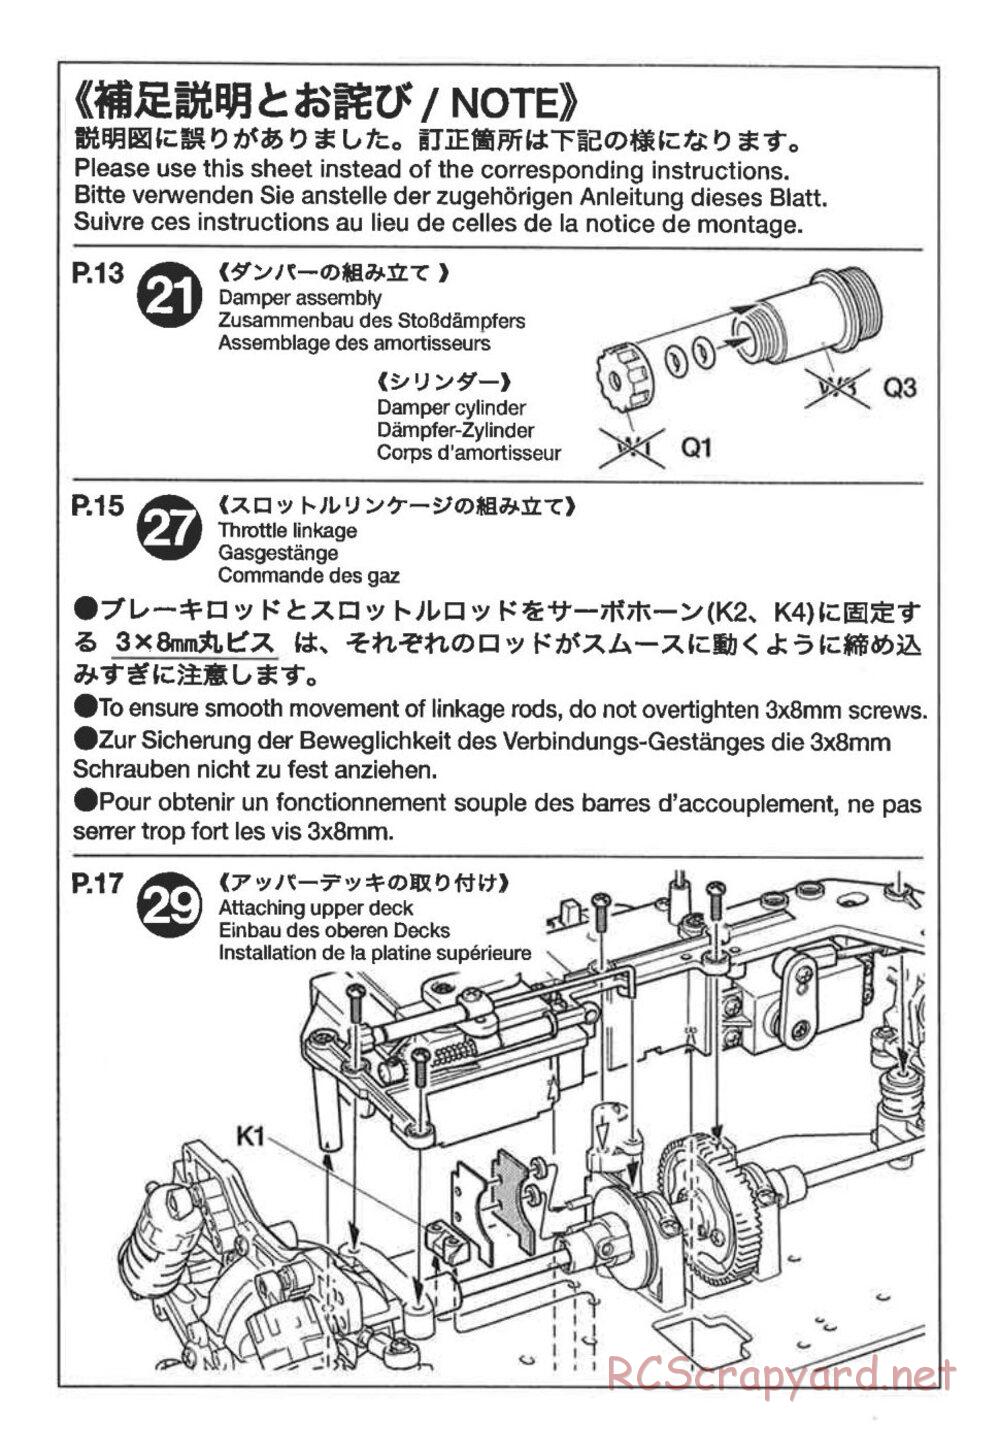 Tamiya - TG10 Mk.2s Chassis - Manual - Page 2